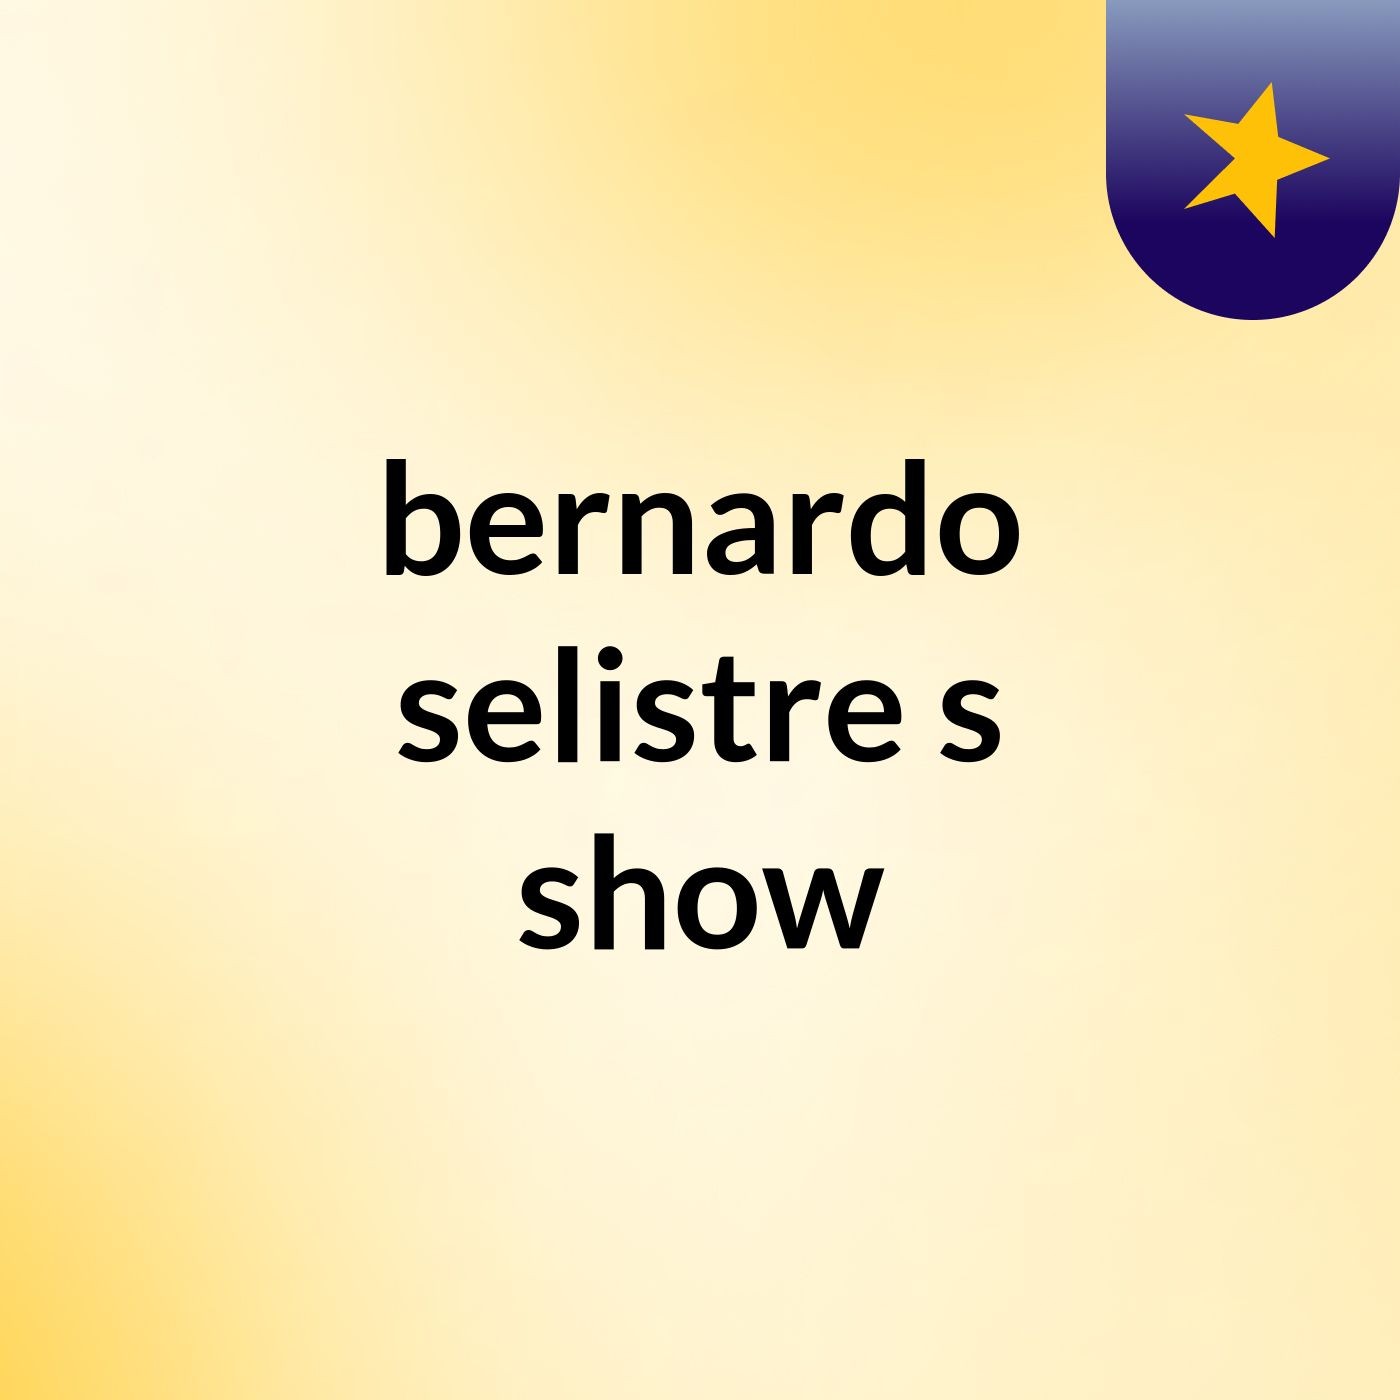 bernardo selistre's show